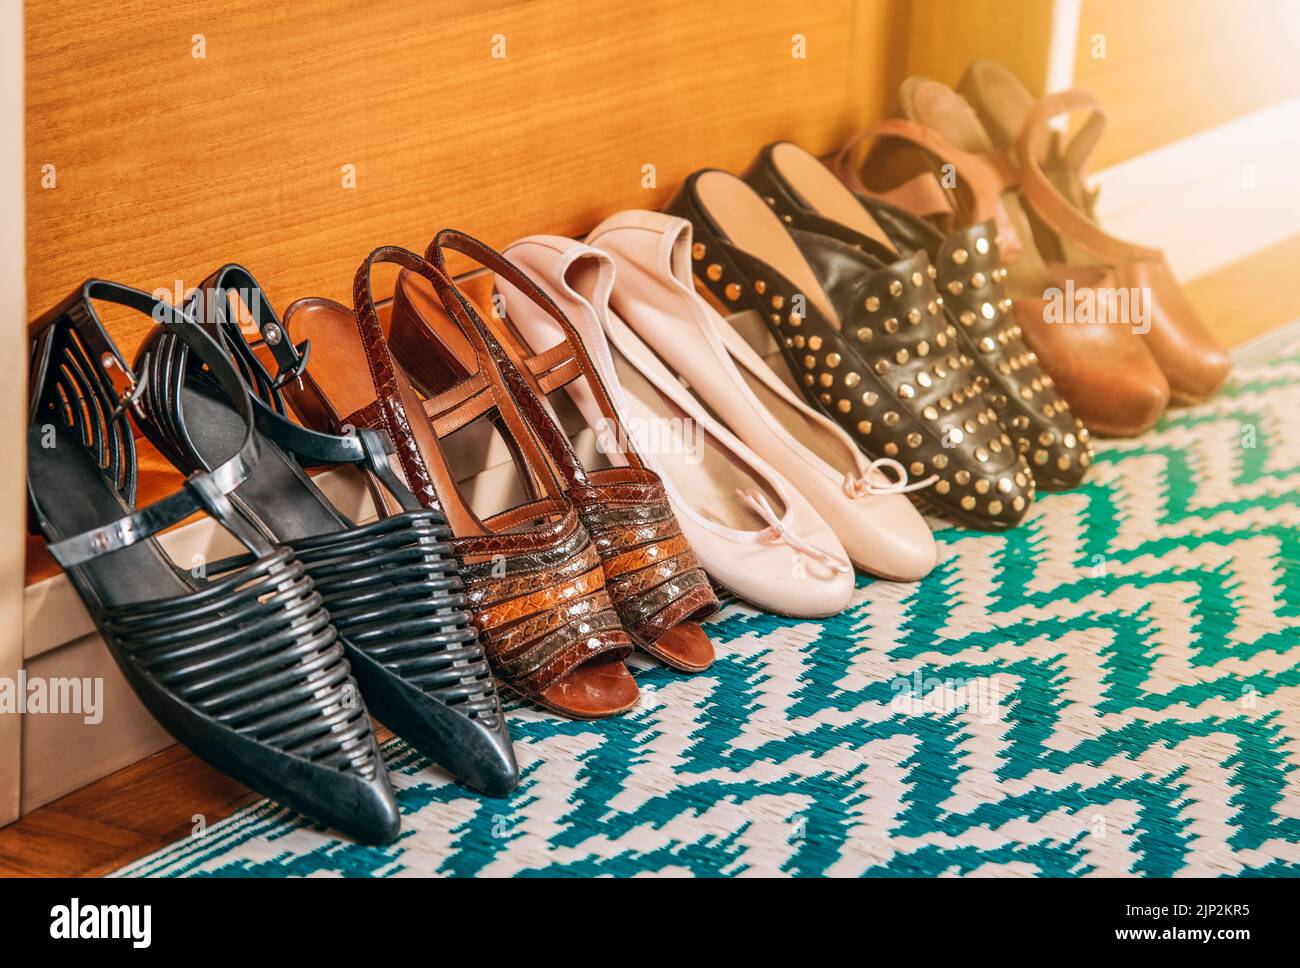 sandal, women's shoes, sandals Stock Photo